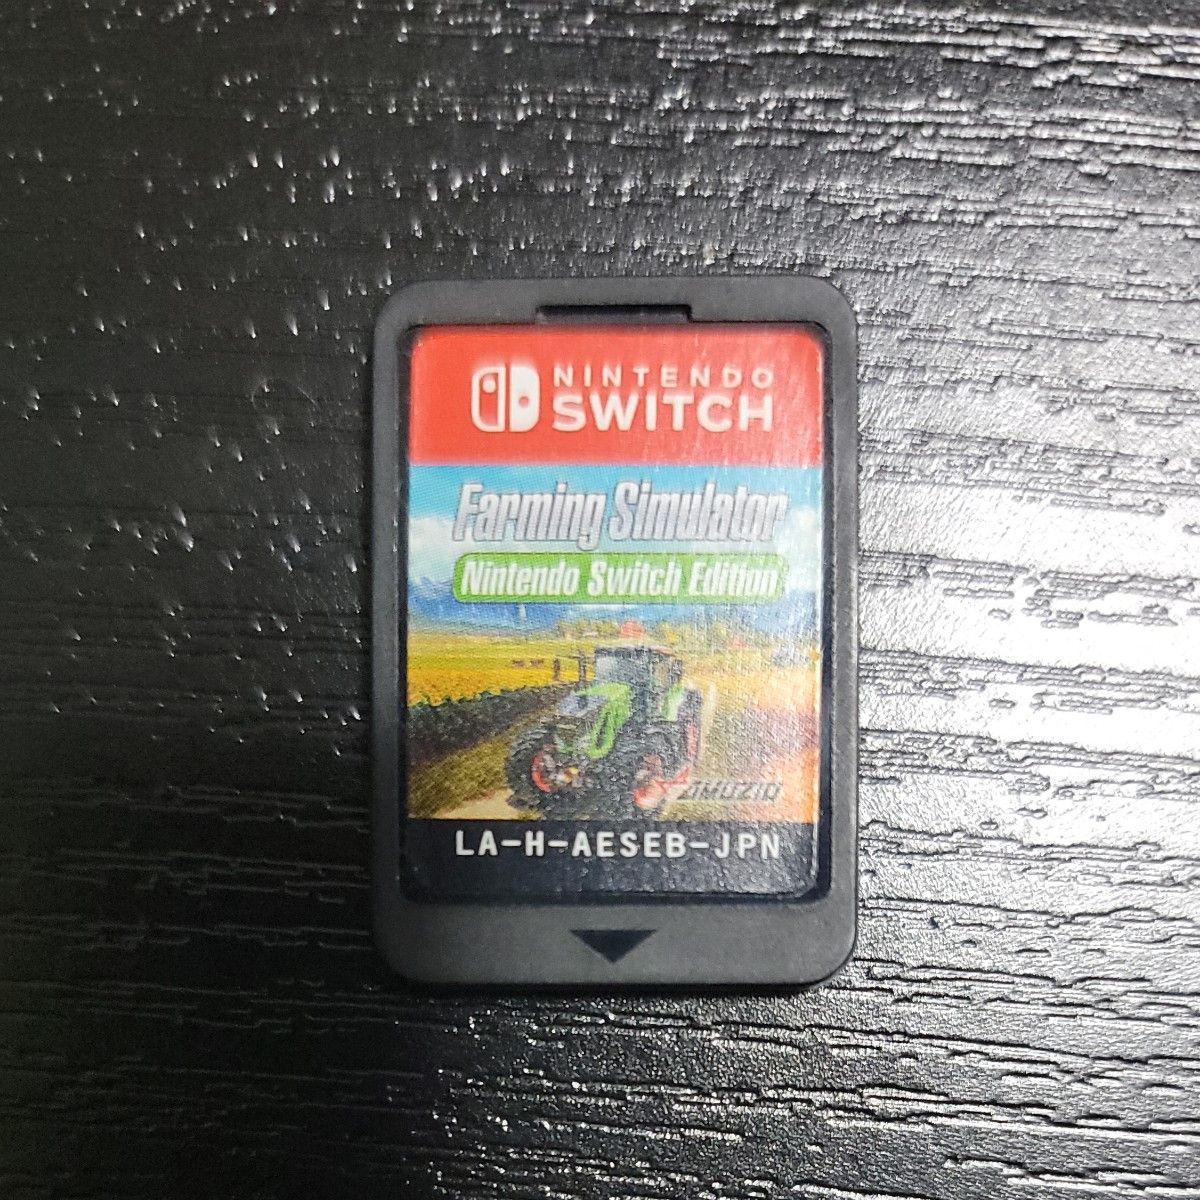 ファーミングシミュレーター Nintendo Switch Edition